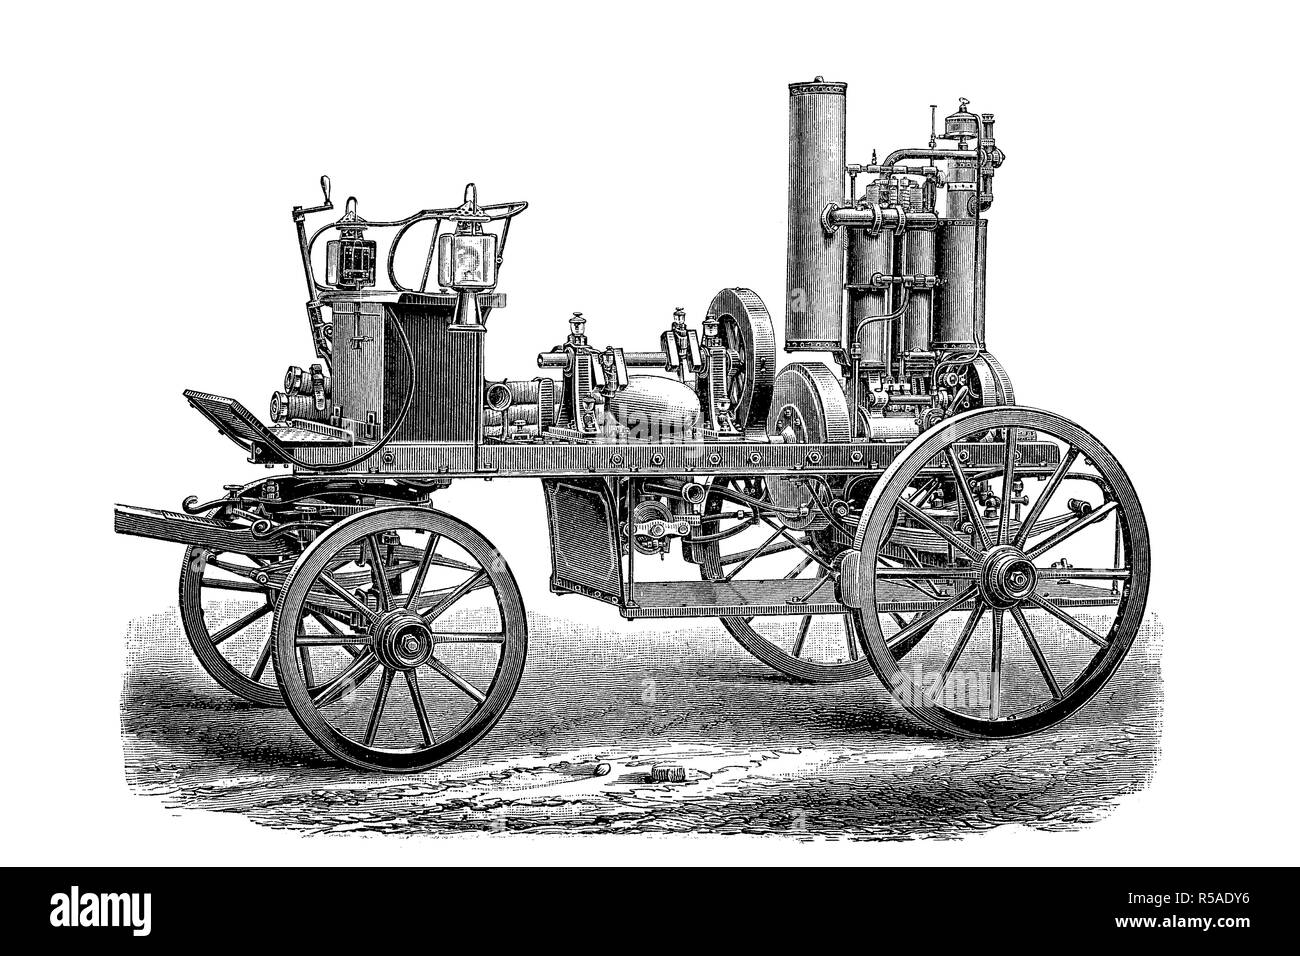 Bomba contra incendios históricos con motor de gasolina desde el siglo XIX, Alemania Foto de stock